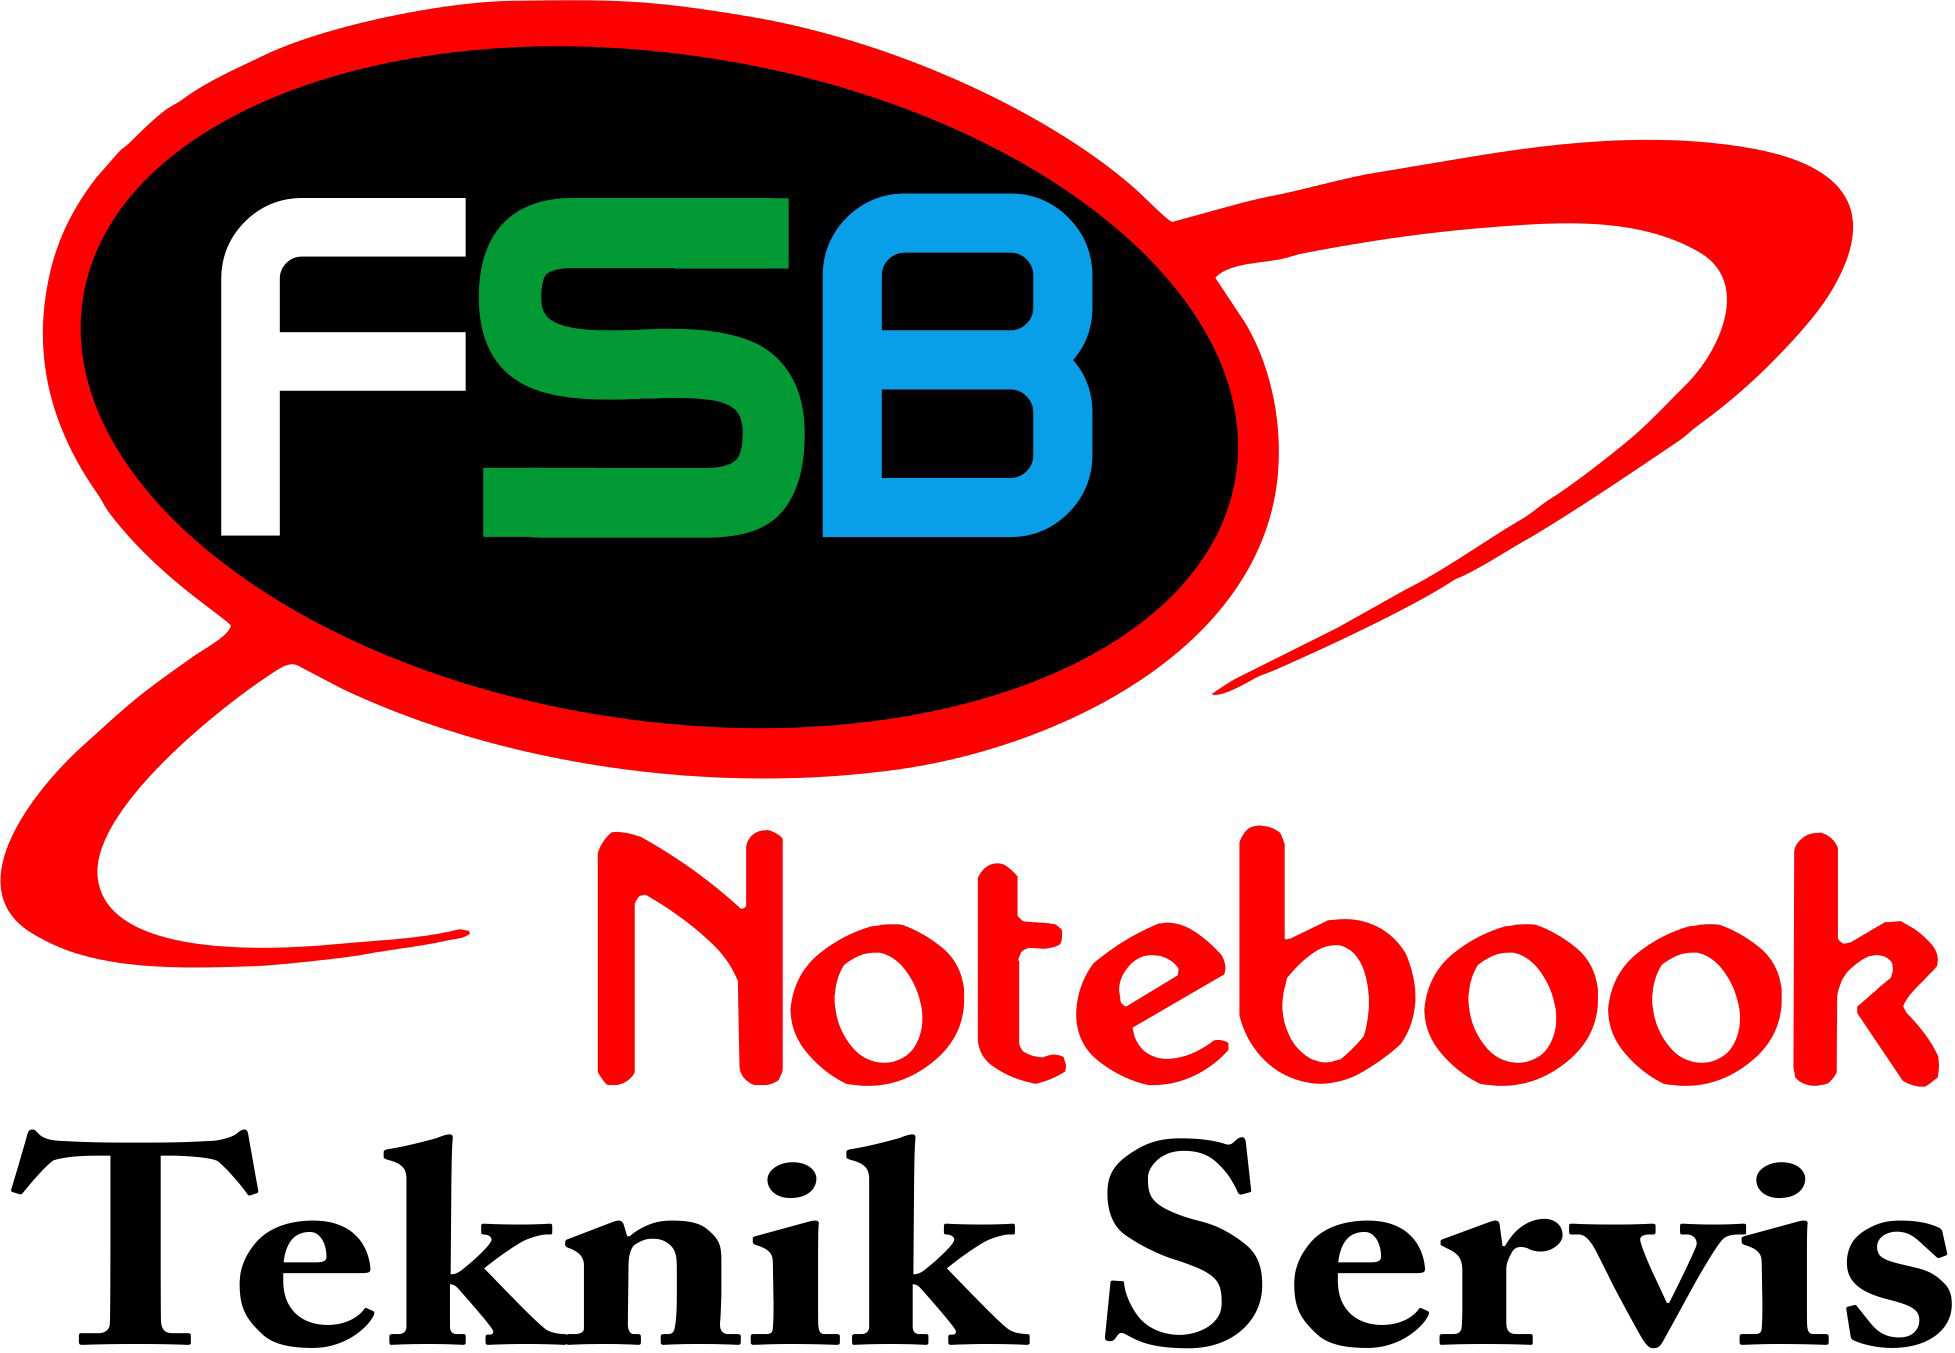 FSB_NOTEBOOK